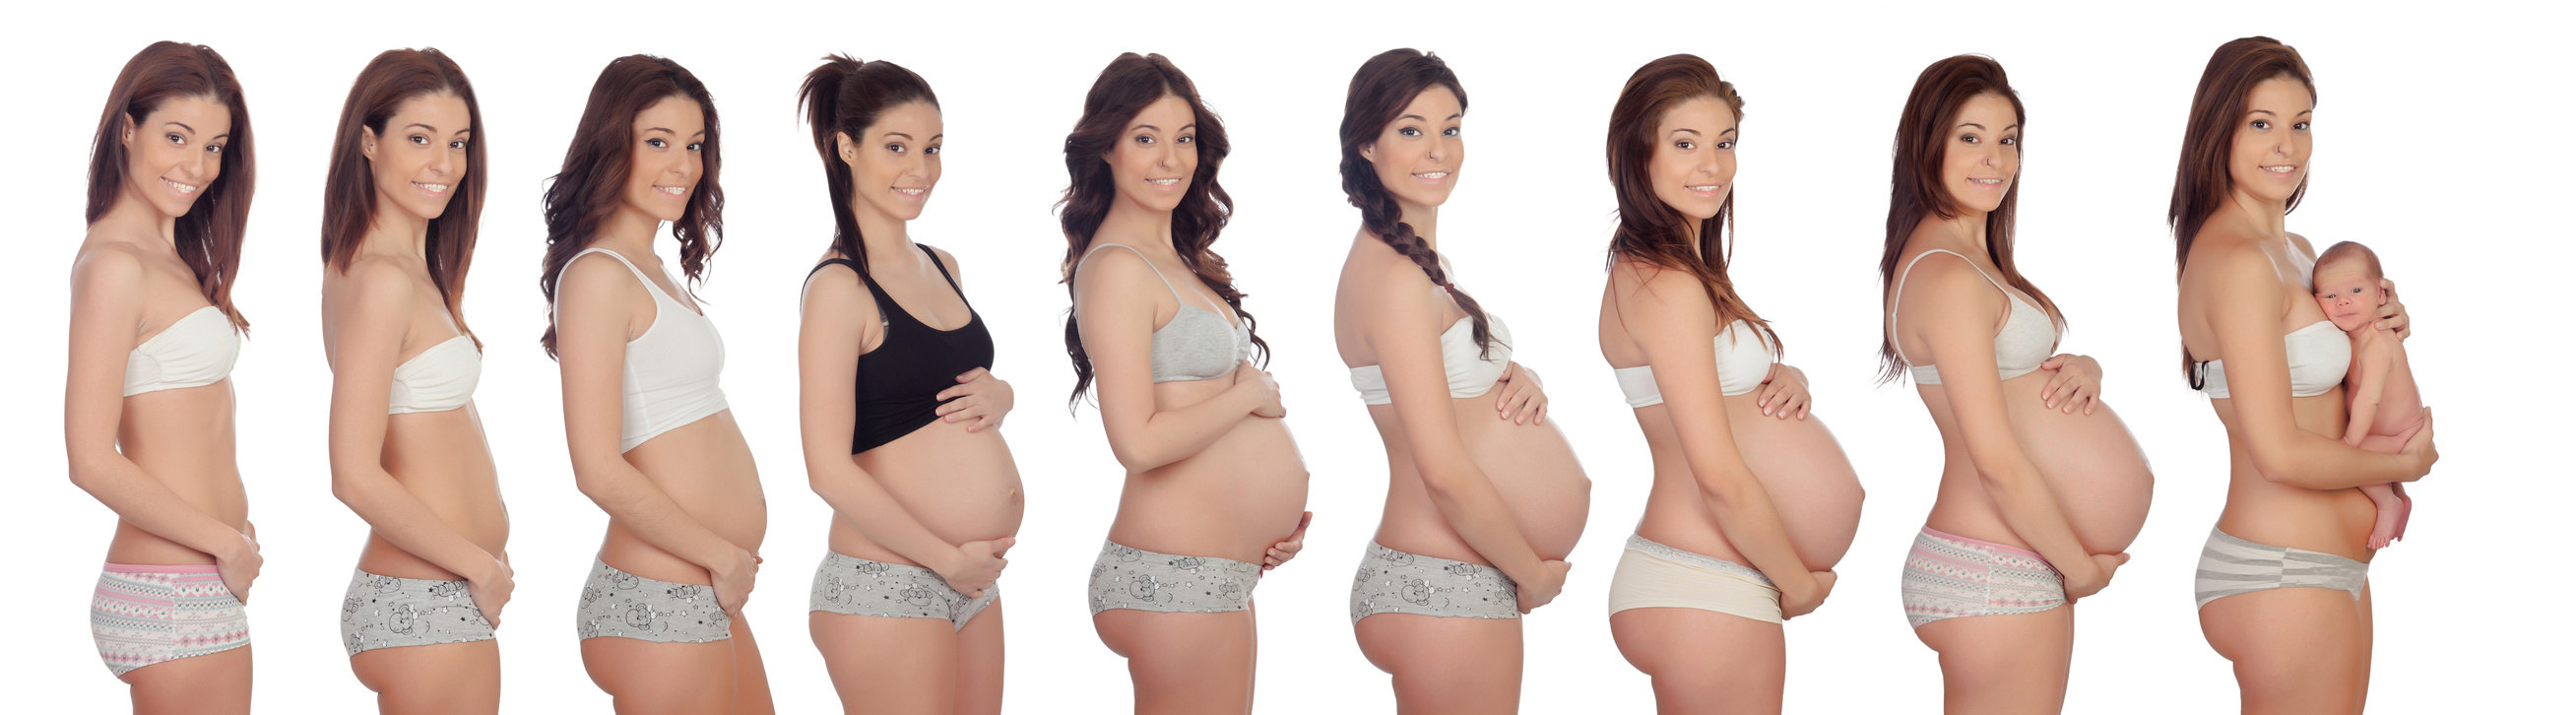 увеличивается ли грудь на ранних сроках беременности фото 21